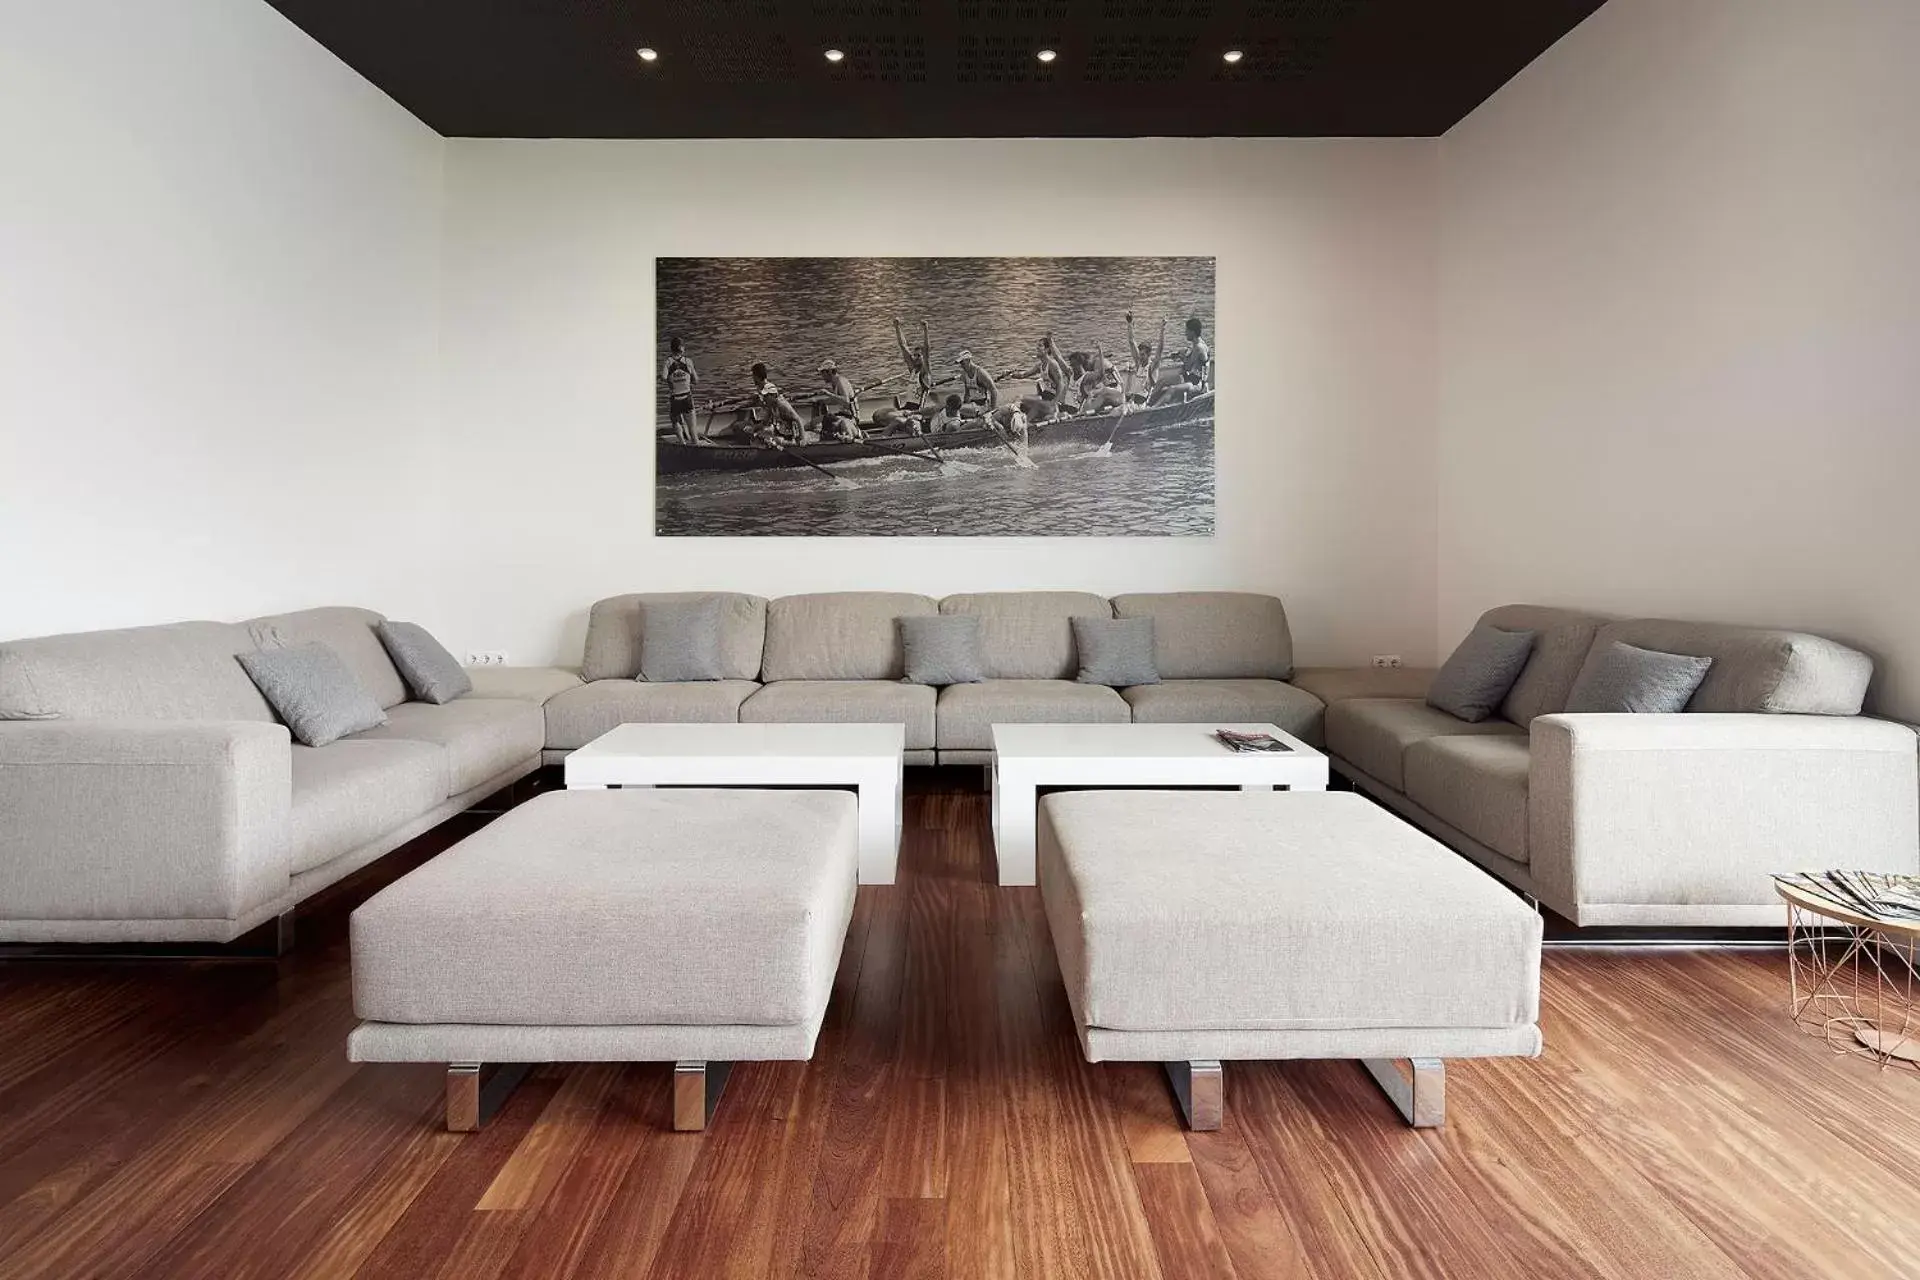 Lobby or reception, Seating Area in Hotel & Thalasso Villa Antilla - Habitaciones con Terraza - Thalasso incluida